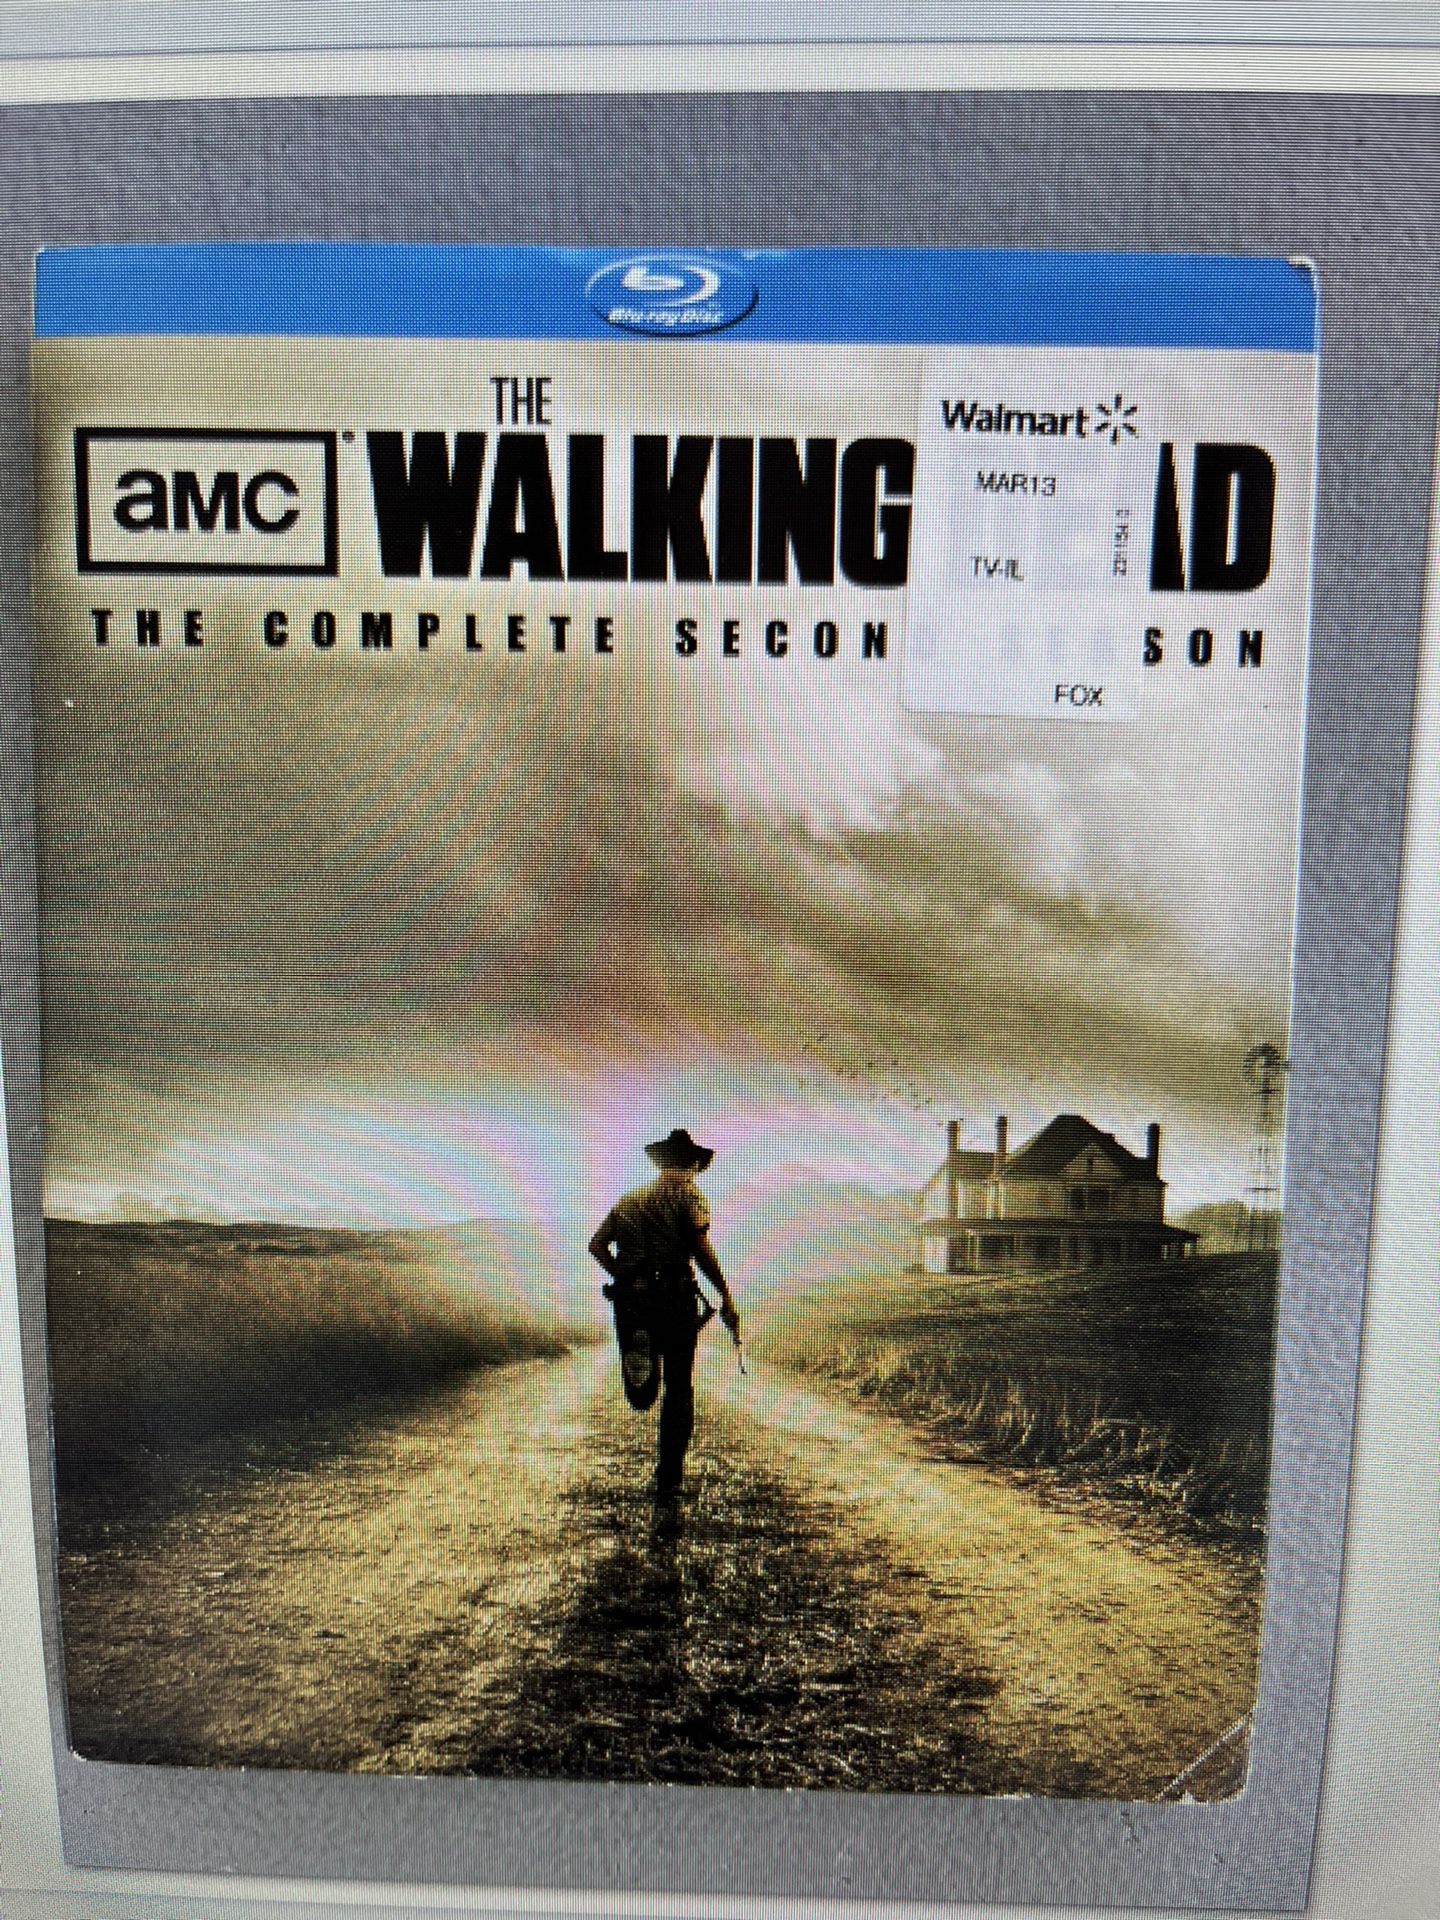 Walking Dead Second Season DVD